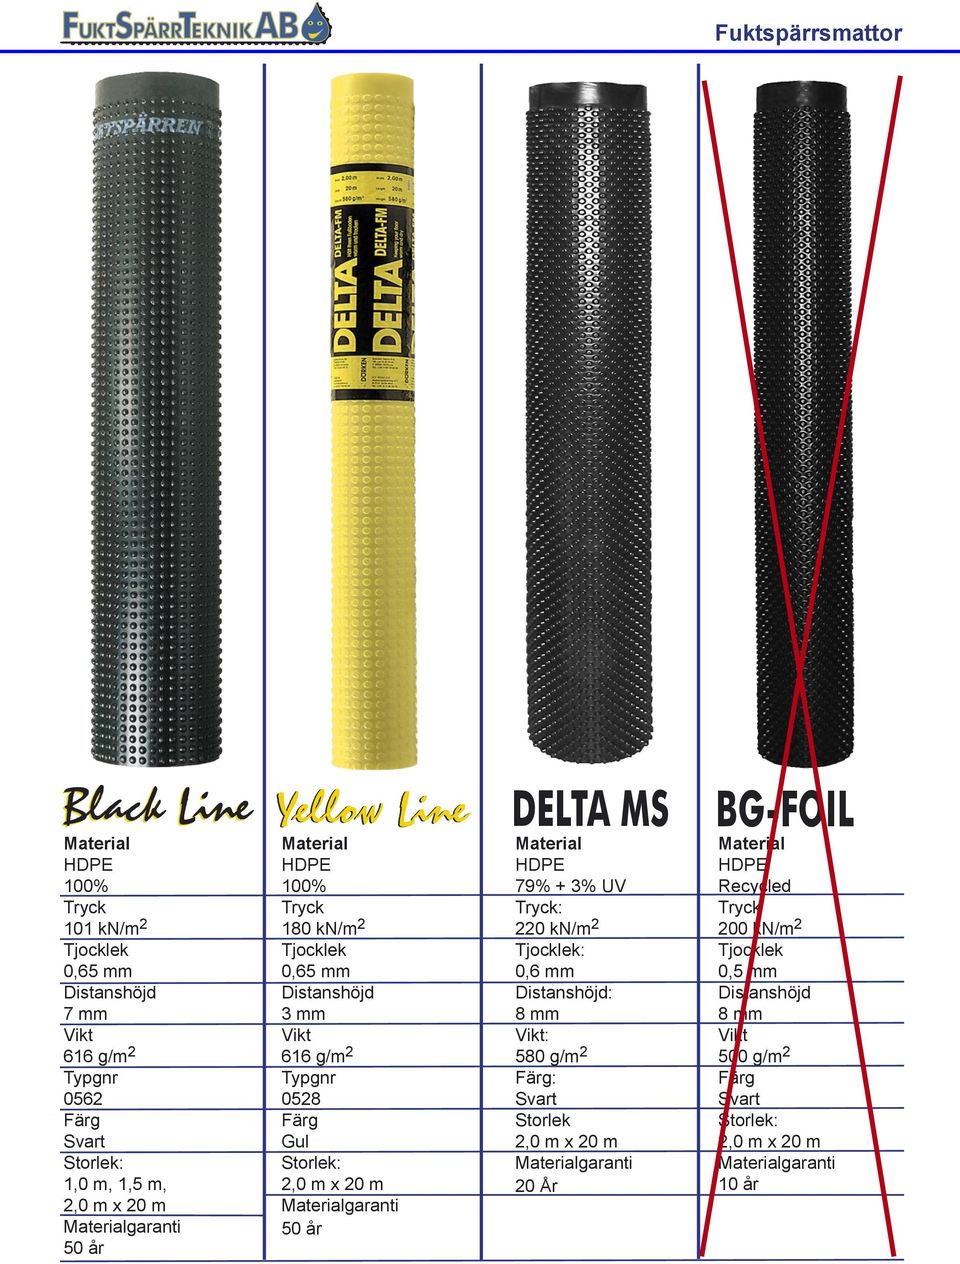 Materialgaranti 50 år DELTA MS Material HDPE 79% + 3% UV Tryck: 220 kn/m 2 Tjocklek: 0,6 mm Distanshöjd: 8 mm Vikt: 580 g/m 2 Färg: Svart Storlek 2,0 m x 20 m